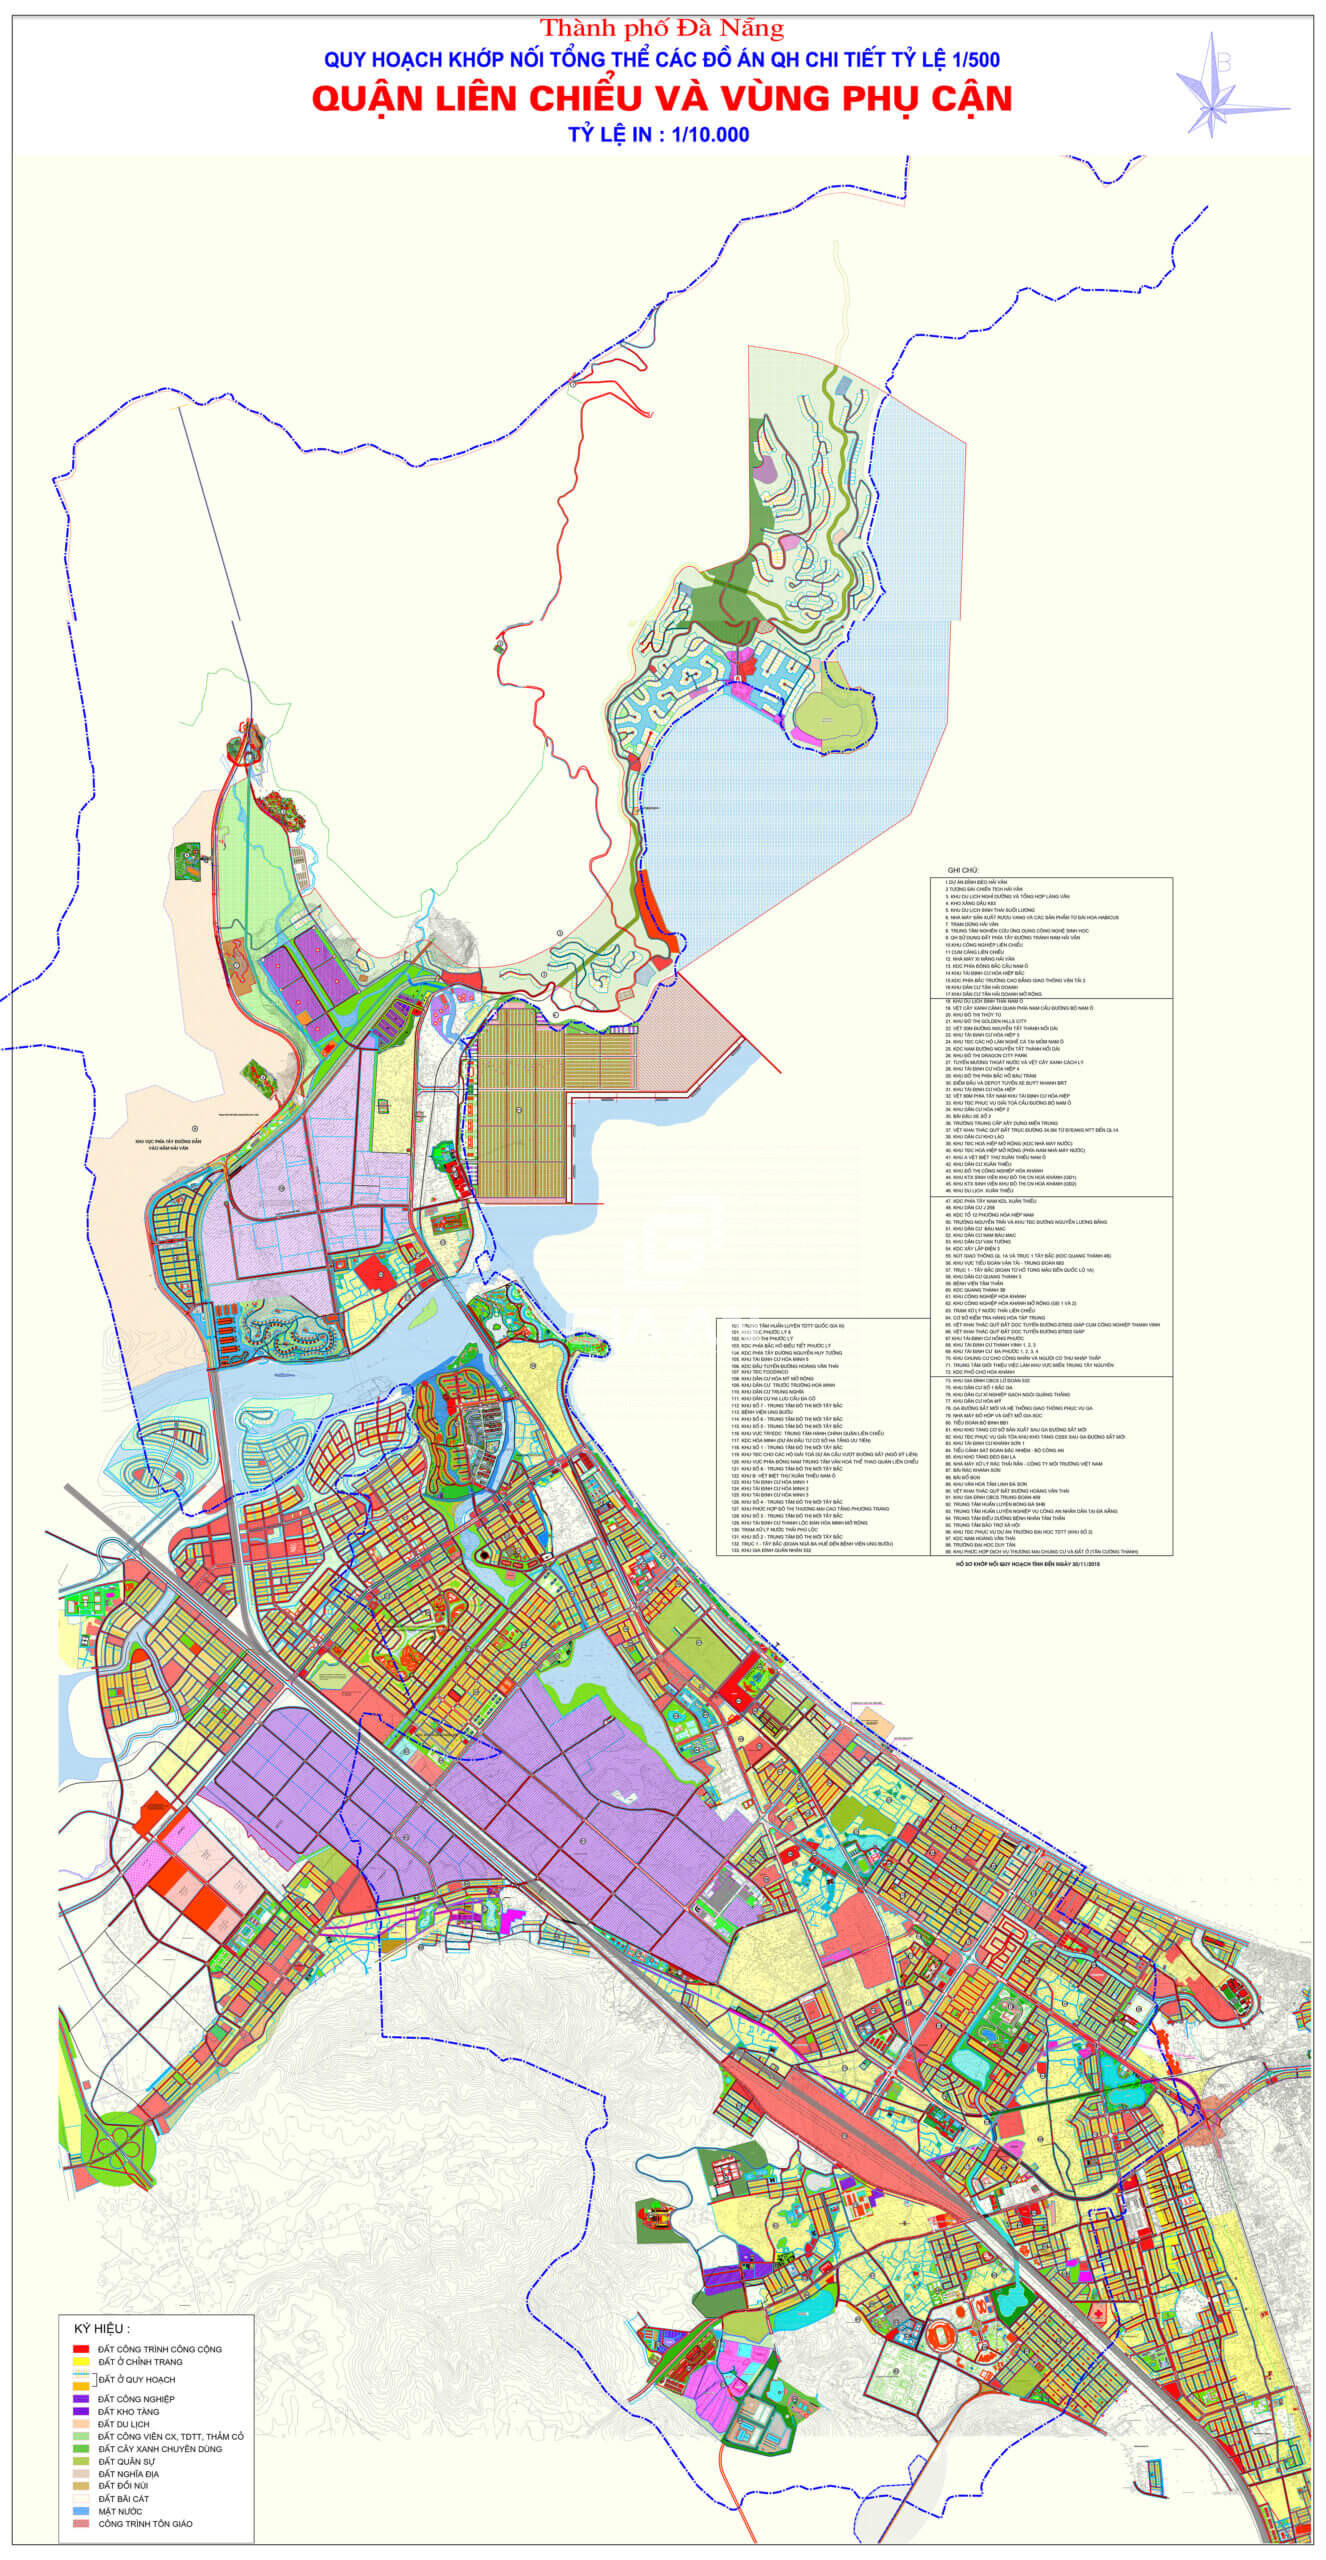 Bản đồ quy hoạch quận Liên Chiểu thành phố Đà Nẵng